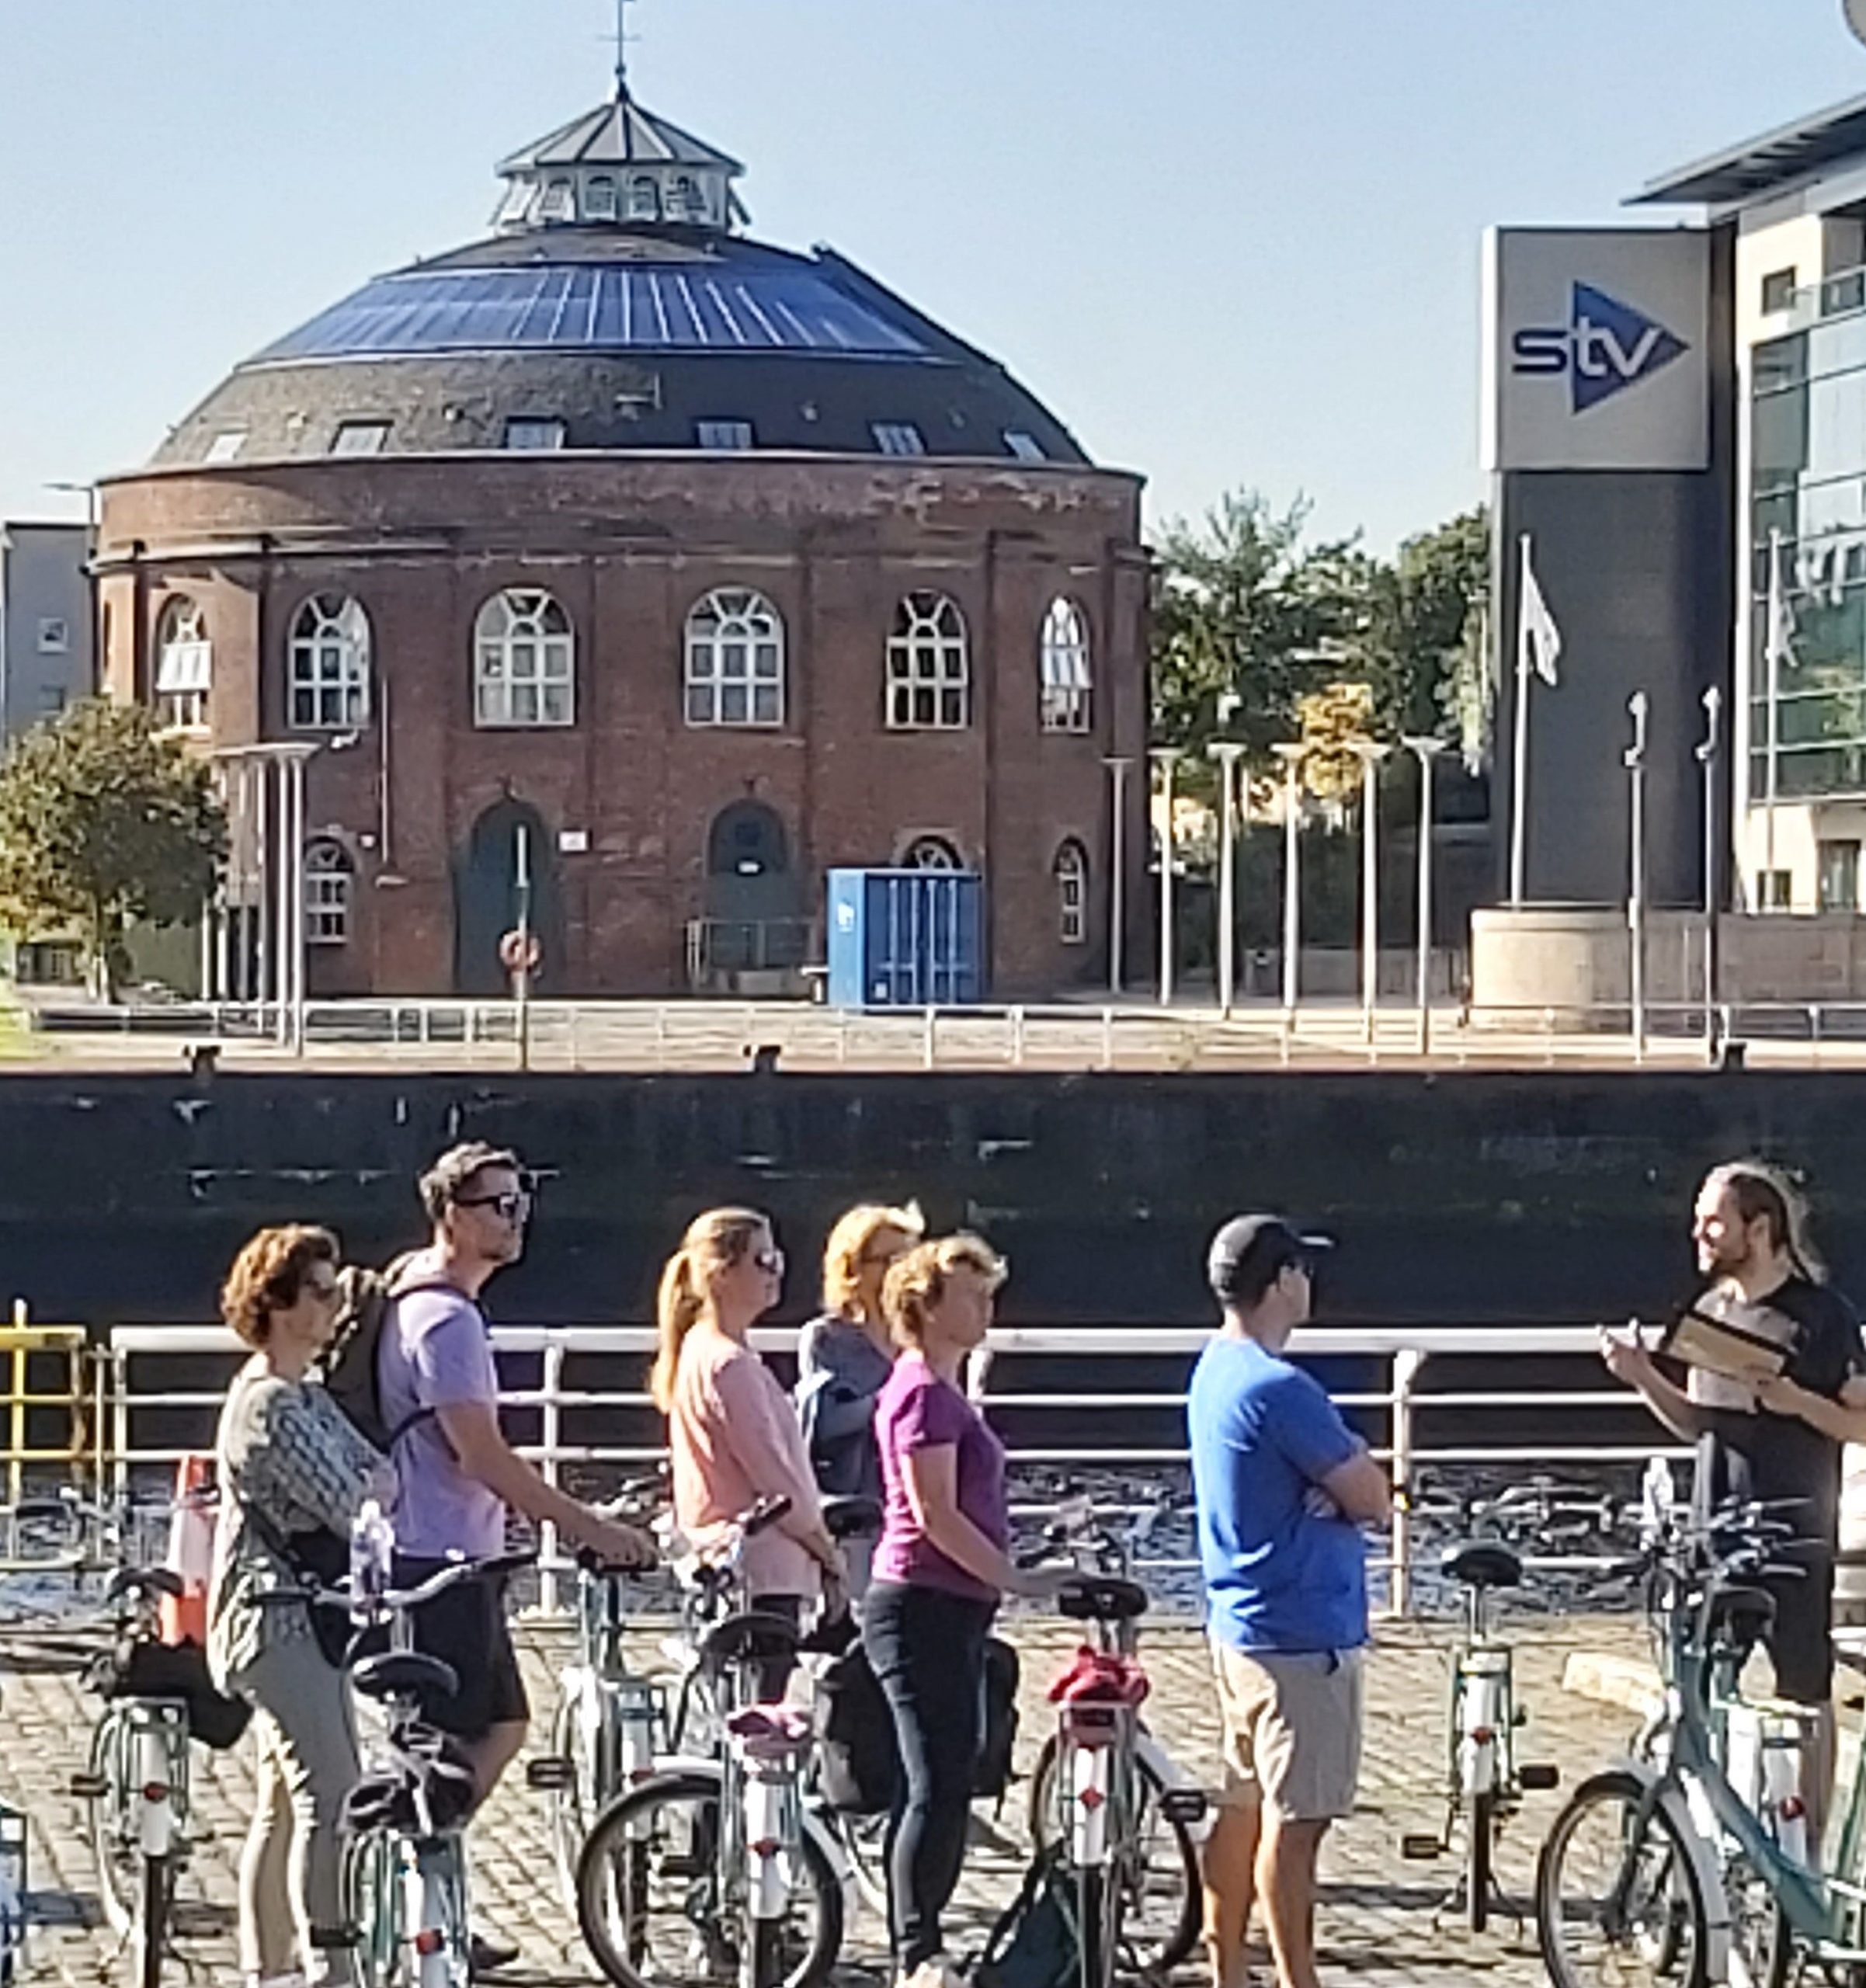 cycle tour glasgow